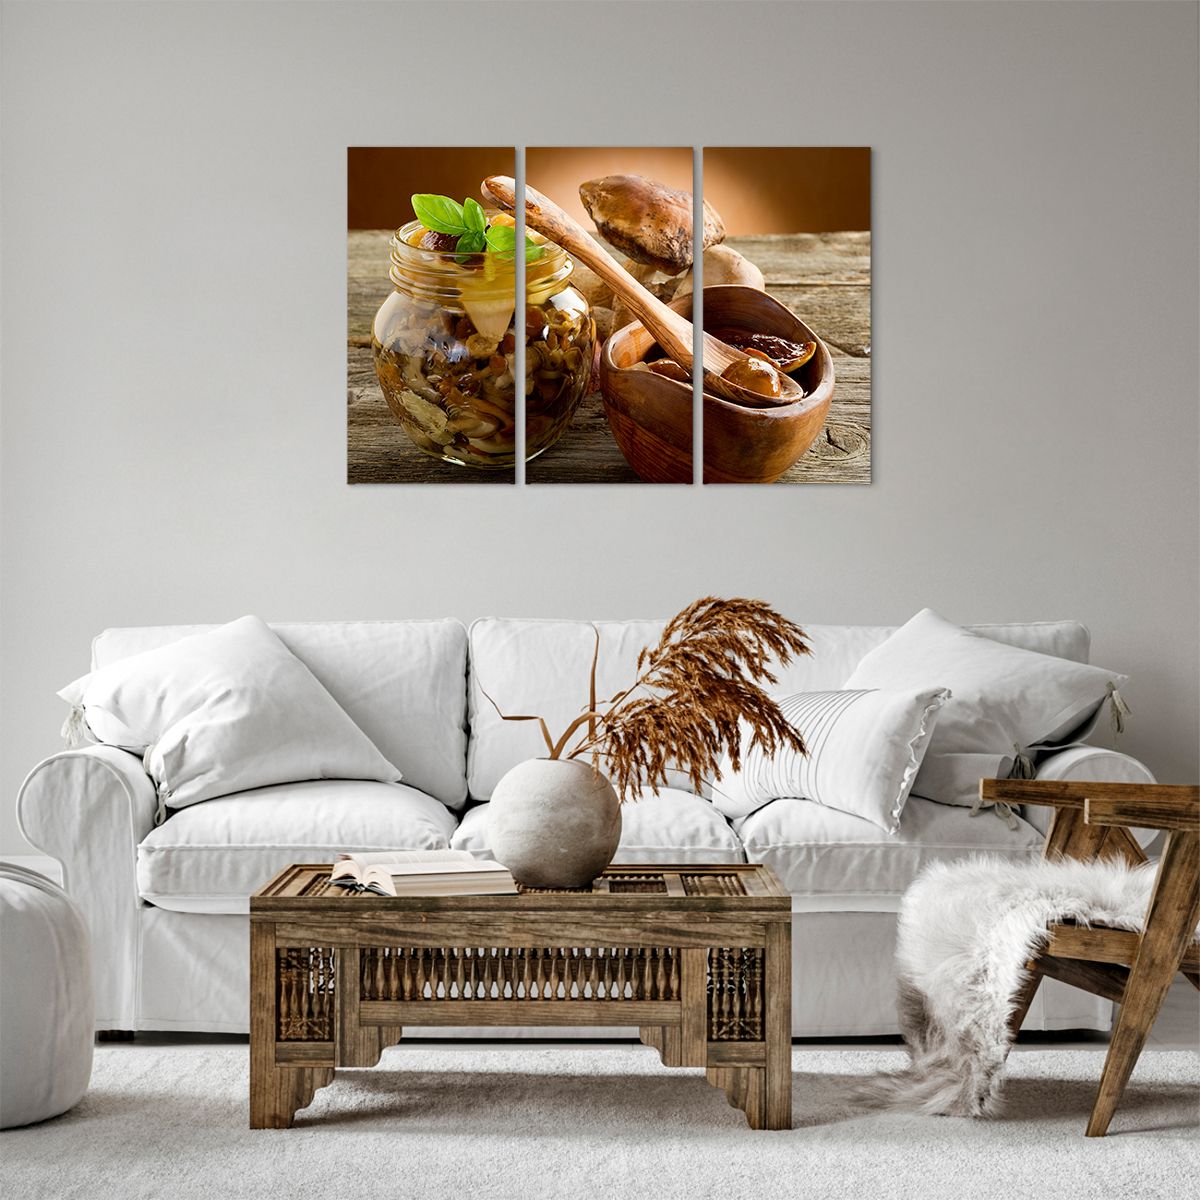 Bild auf Leinwand Gastronomie, Bild auf Leinwand Pilze, Bild auf Leinwand Küche, Bild auf Leinwand Löffel, Bild auf Leinwand Waldernte